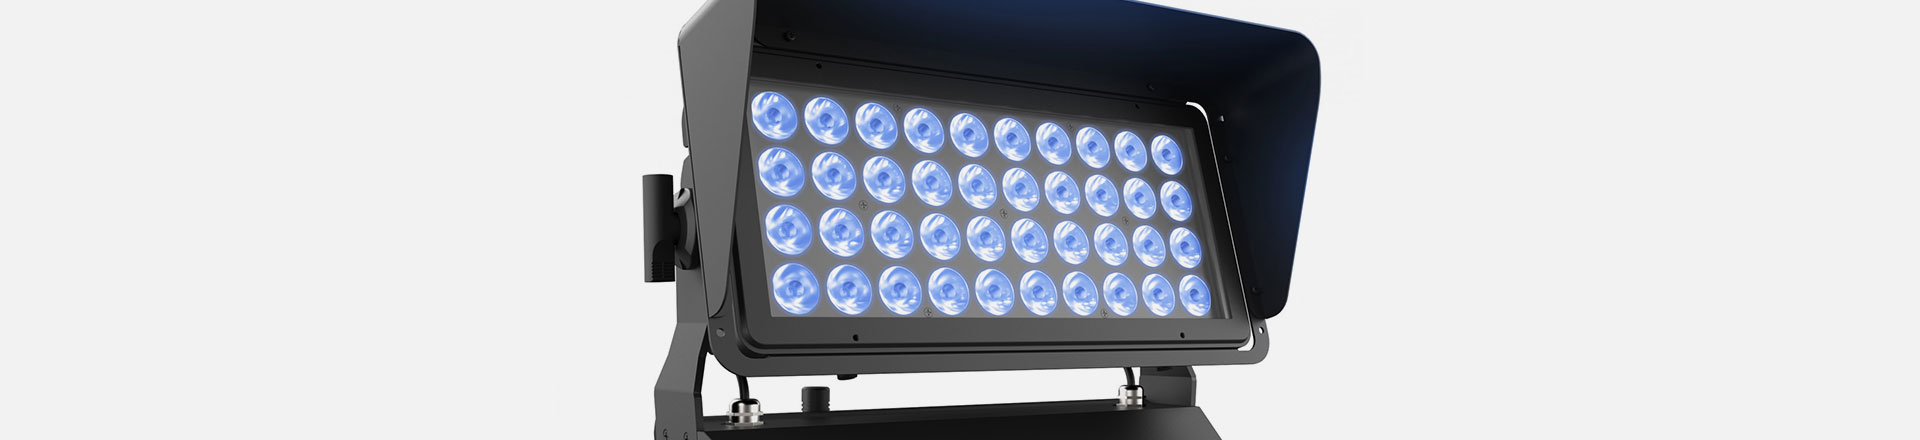 Wydajny naświetlacz LED (Briteq BT-CHROMA 800) do wielu zastosowań 